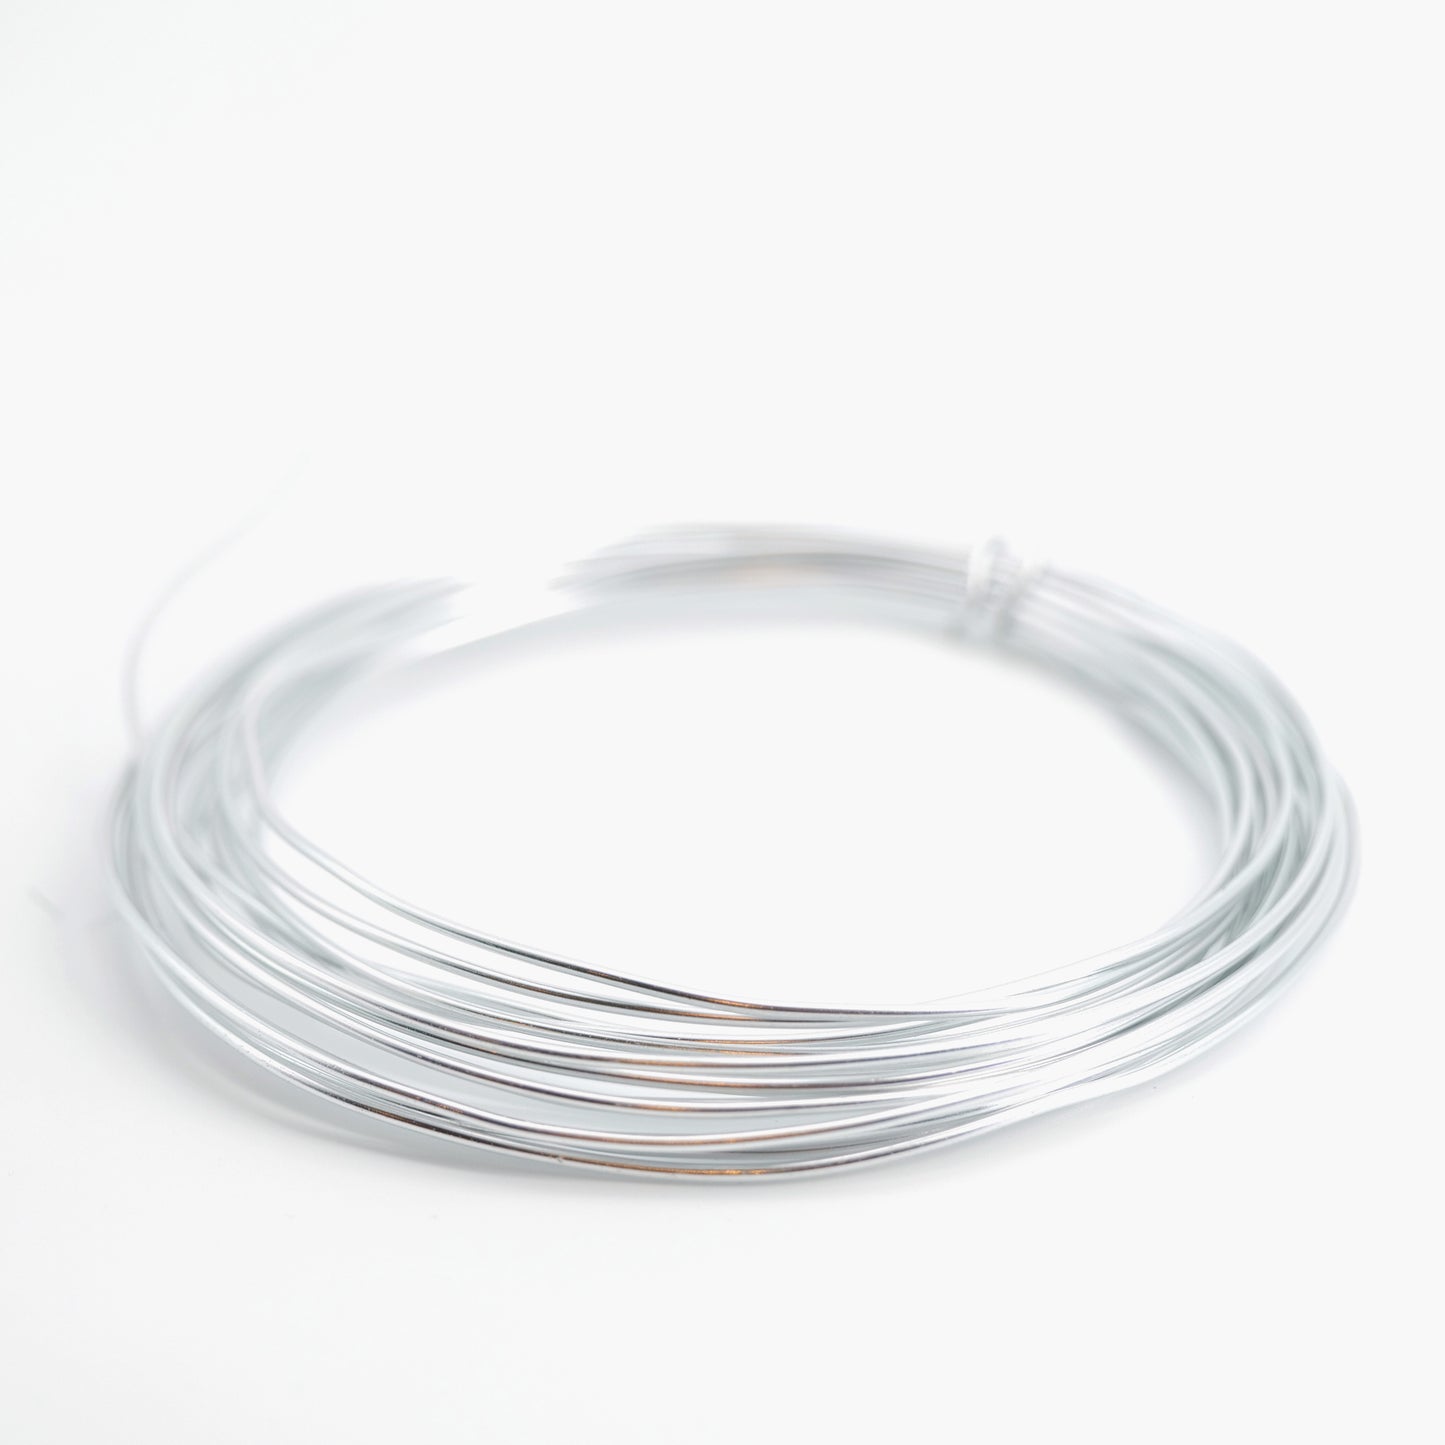 Aluminum wire